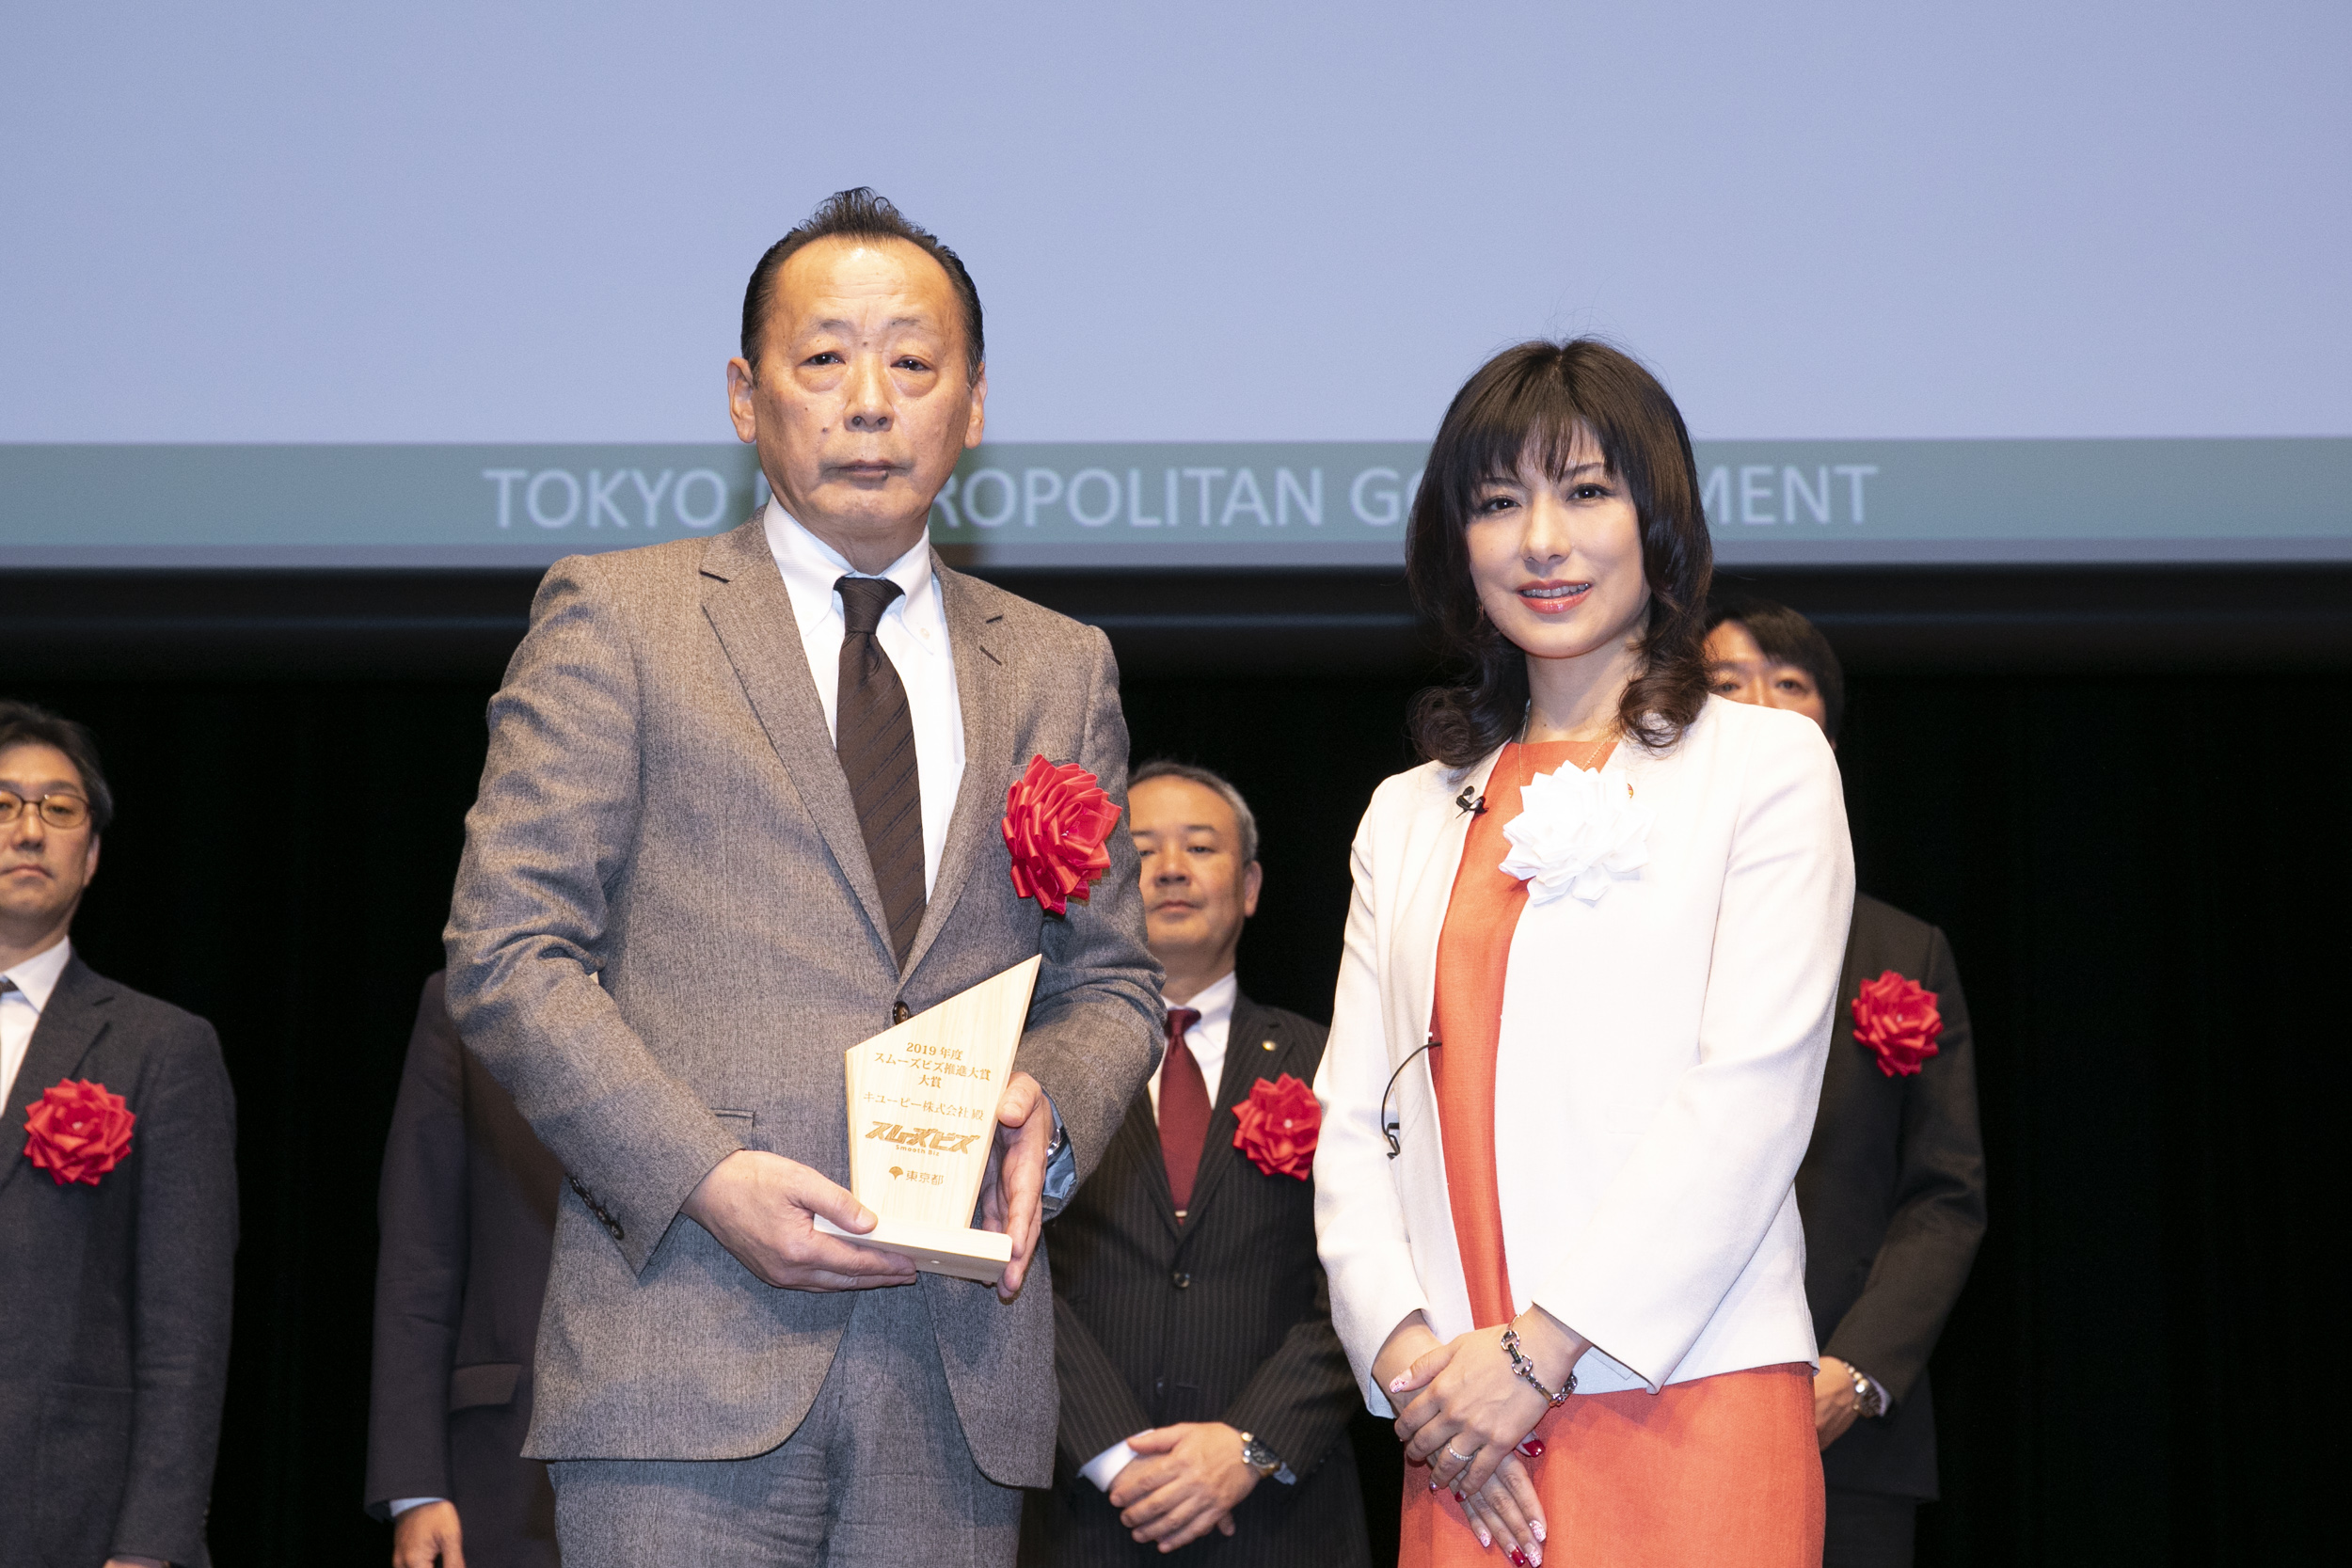 キユーピーがスムーズビズ推進大賞で大賞を受賞、東京2020大会はもとより将来を見据えた取り組みが評価